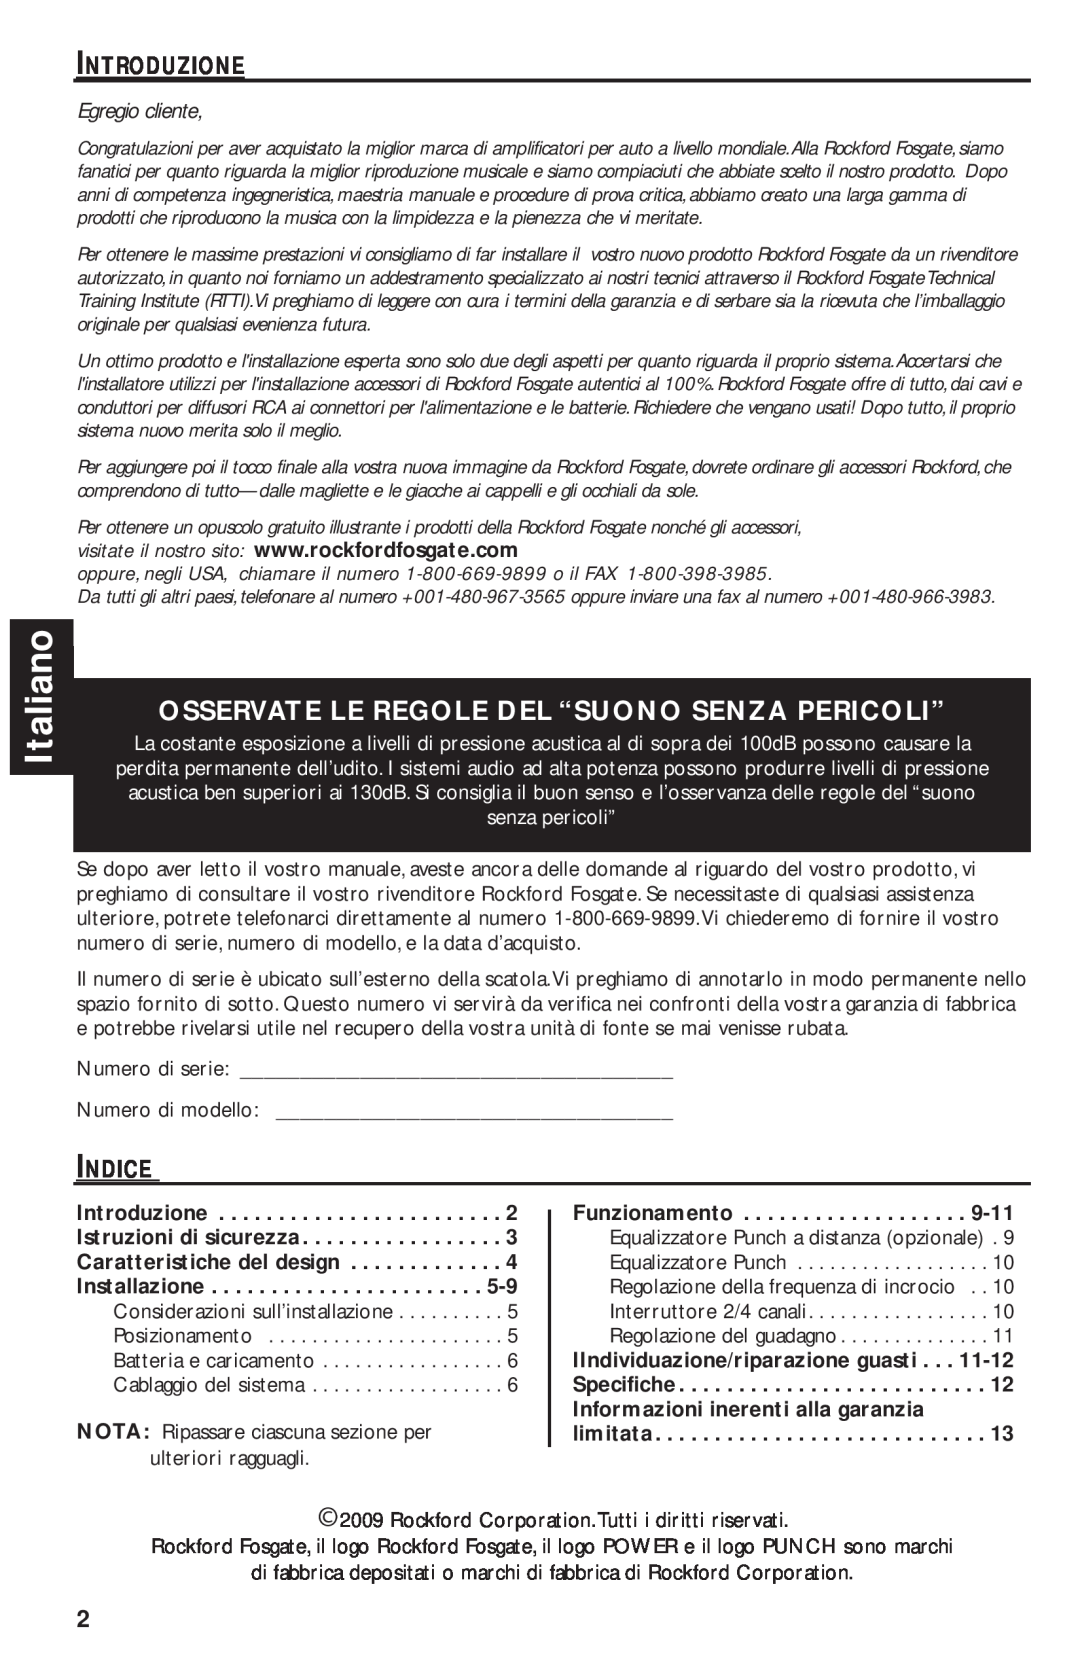 Rockford Fosgate T1000-4 manual Italiano, Osservate Le Regole Del “Suono Senza Pericoli”, Egregio cliente 